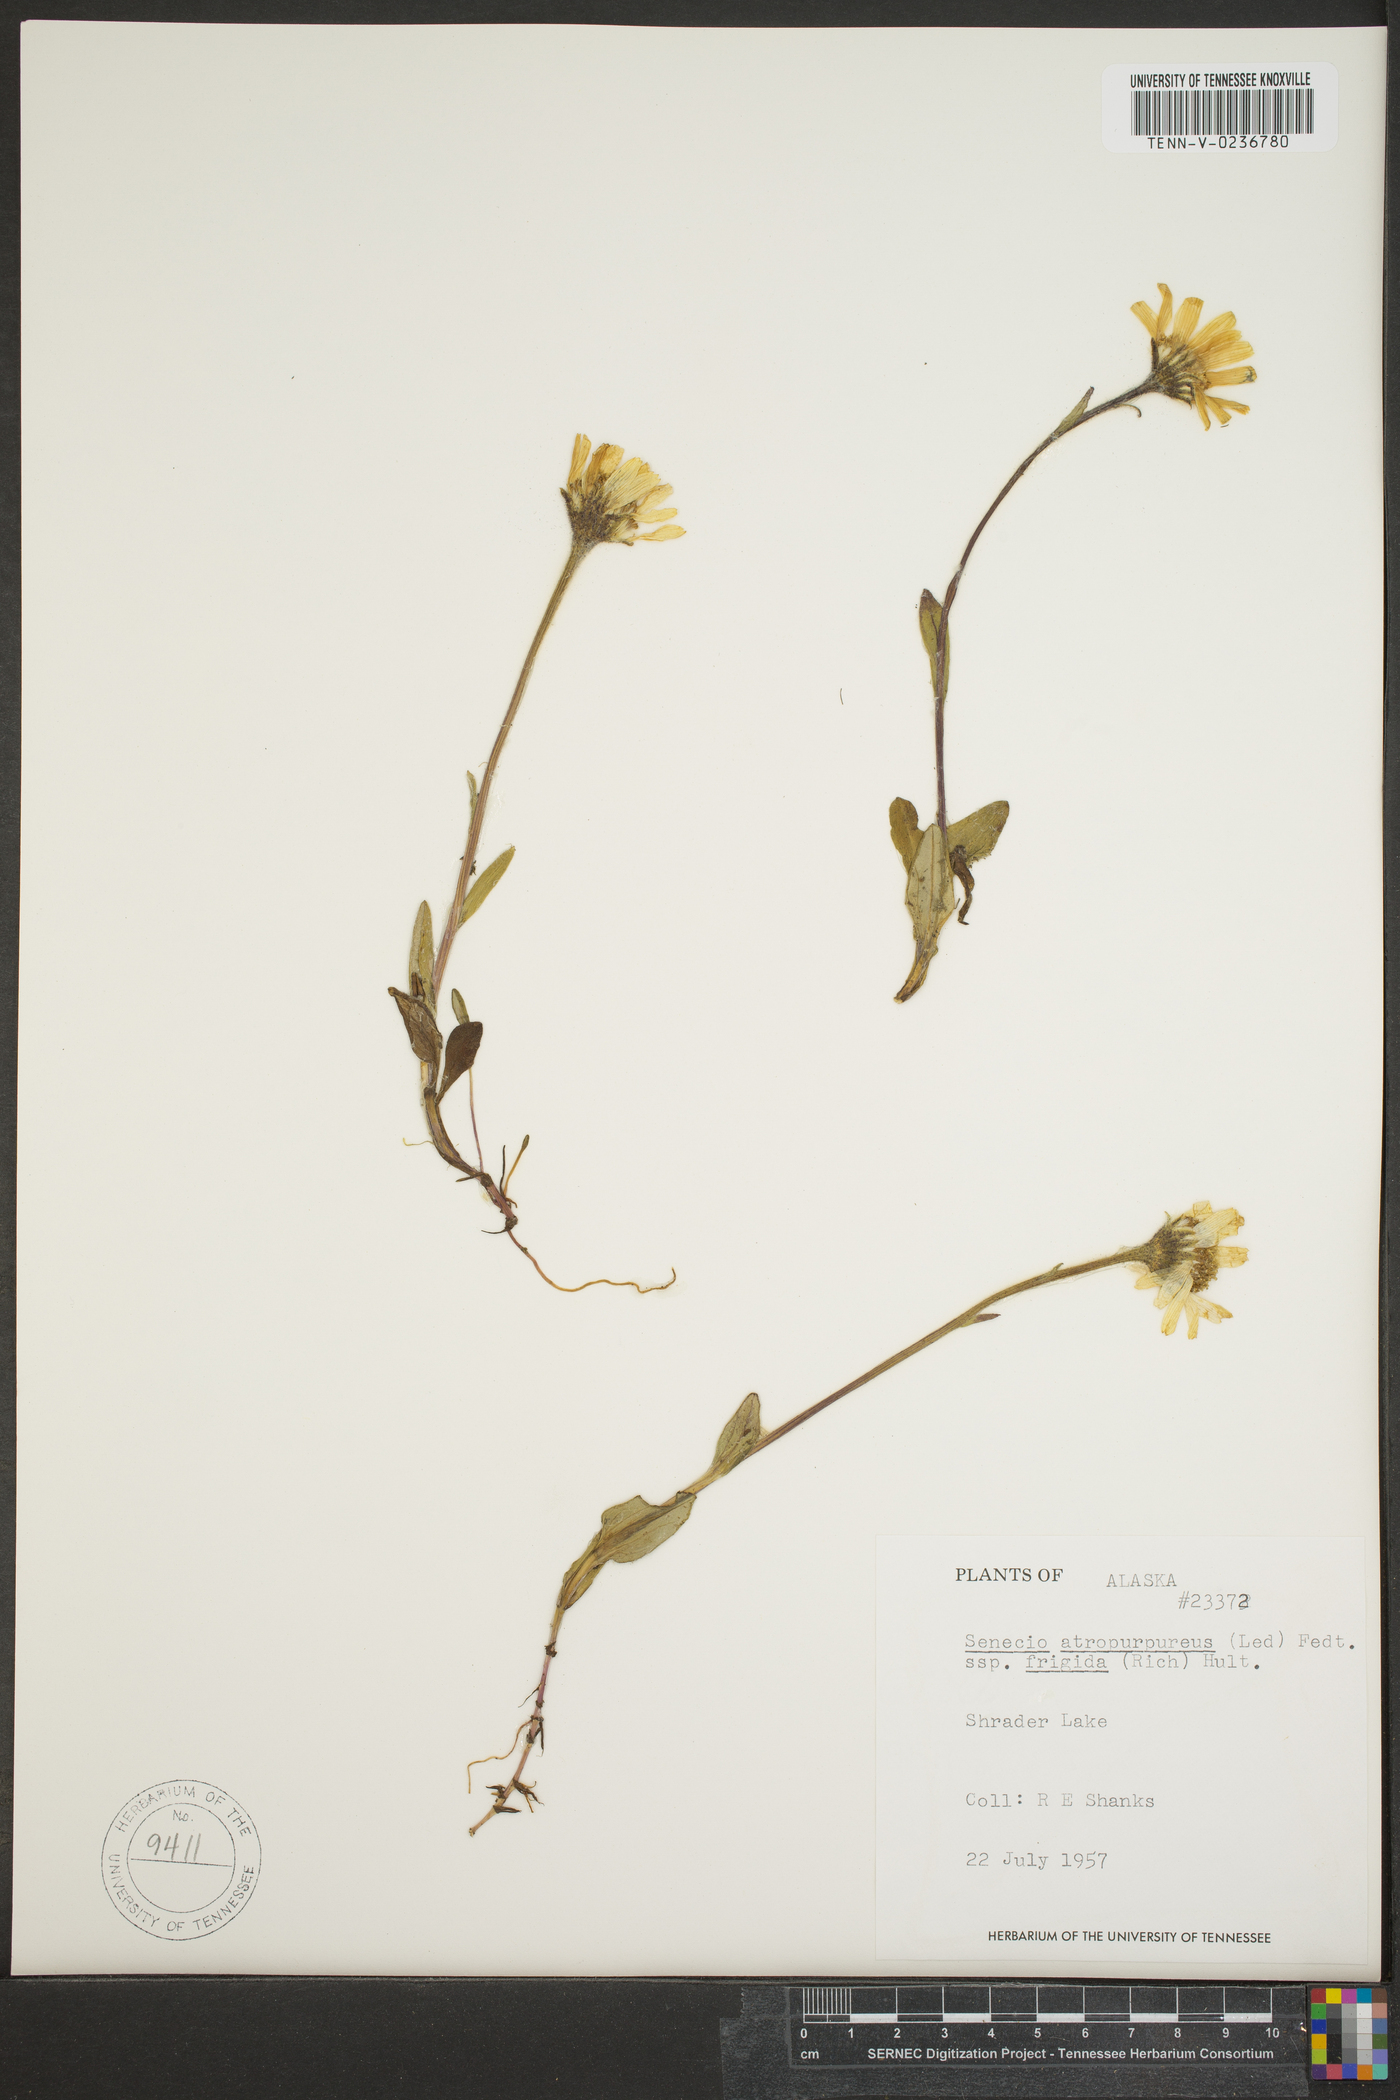 Senecio atropurpureus subsp. frigidus image